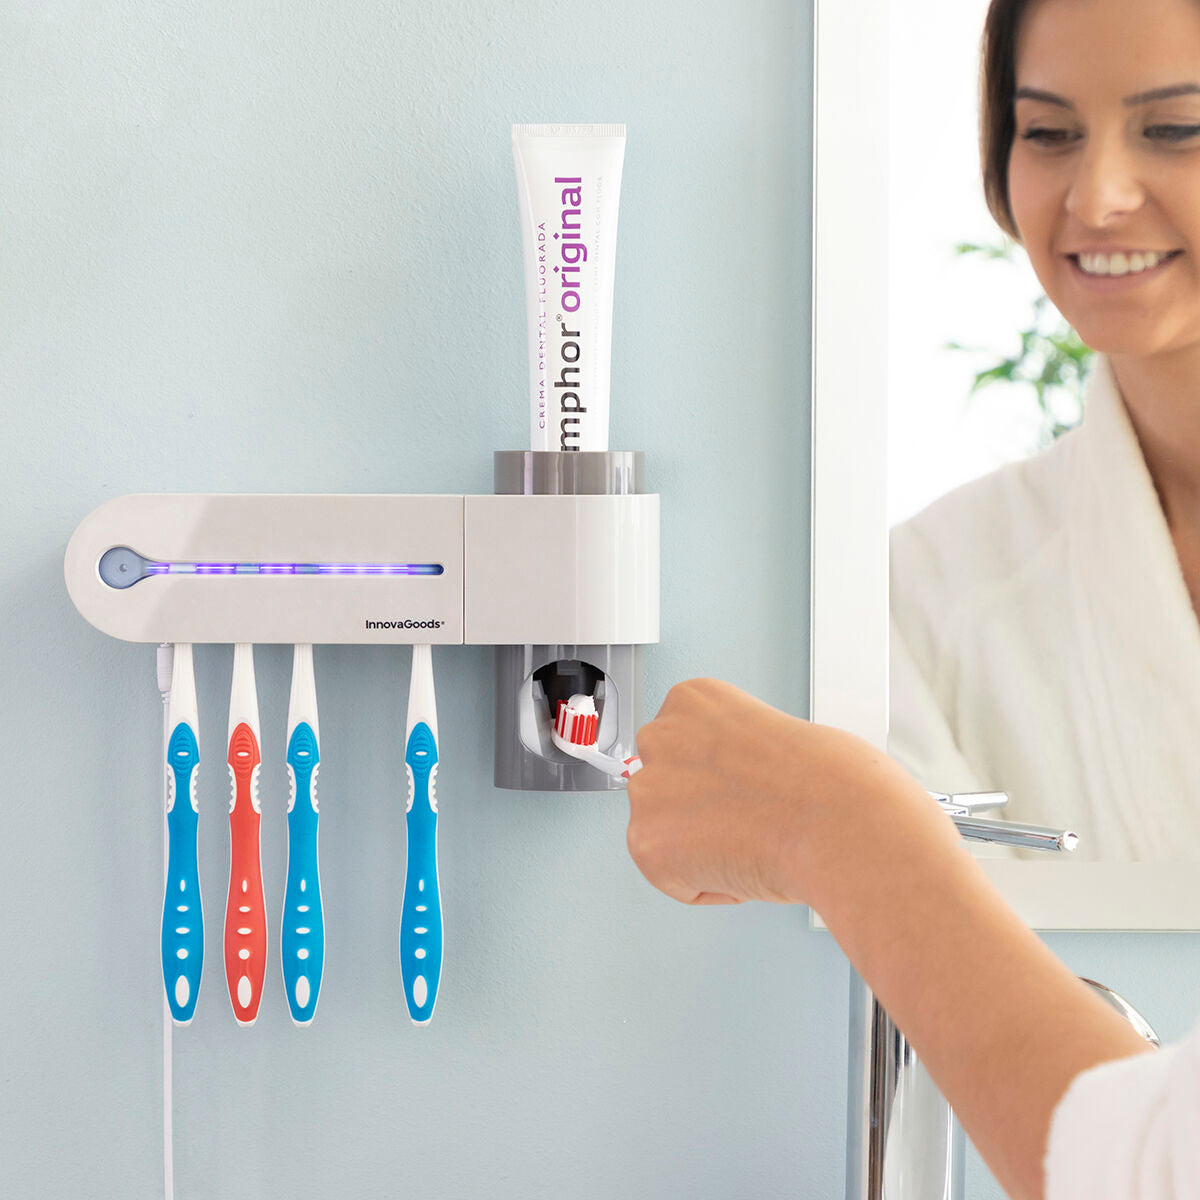 Esterilizador de escova de dentes UV com dispensador de suporte e pasta de dente Smiluv InnovAgoods